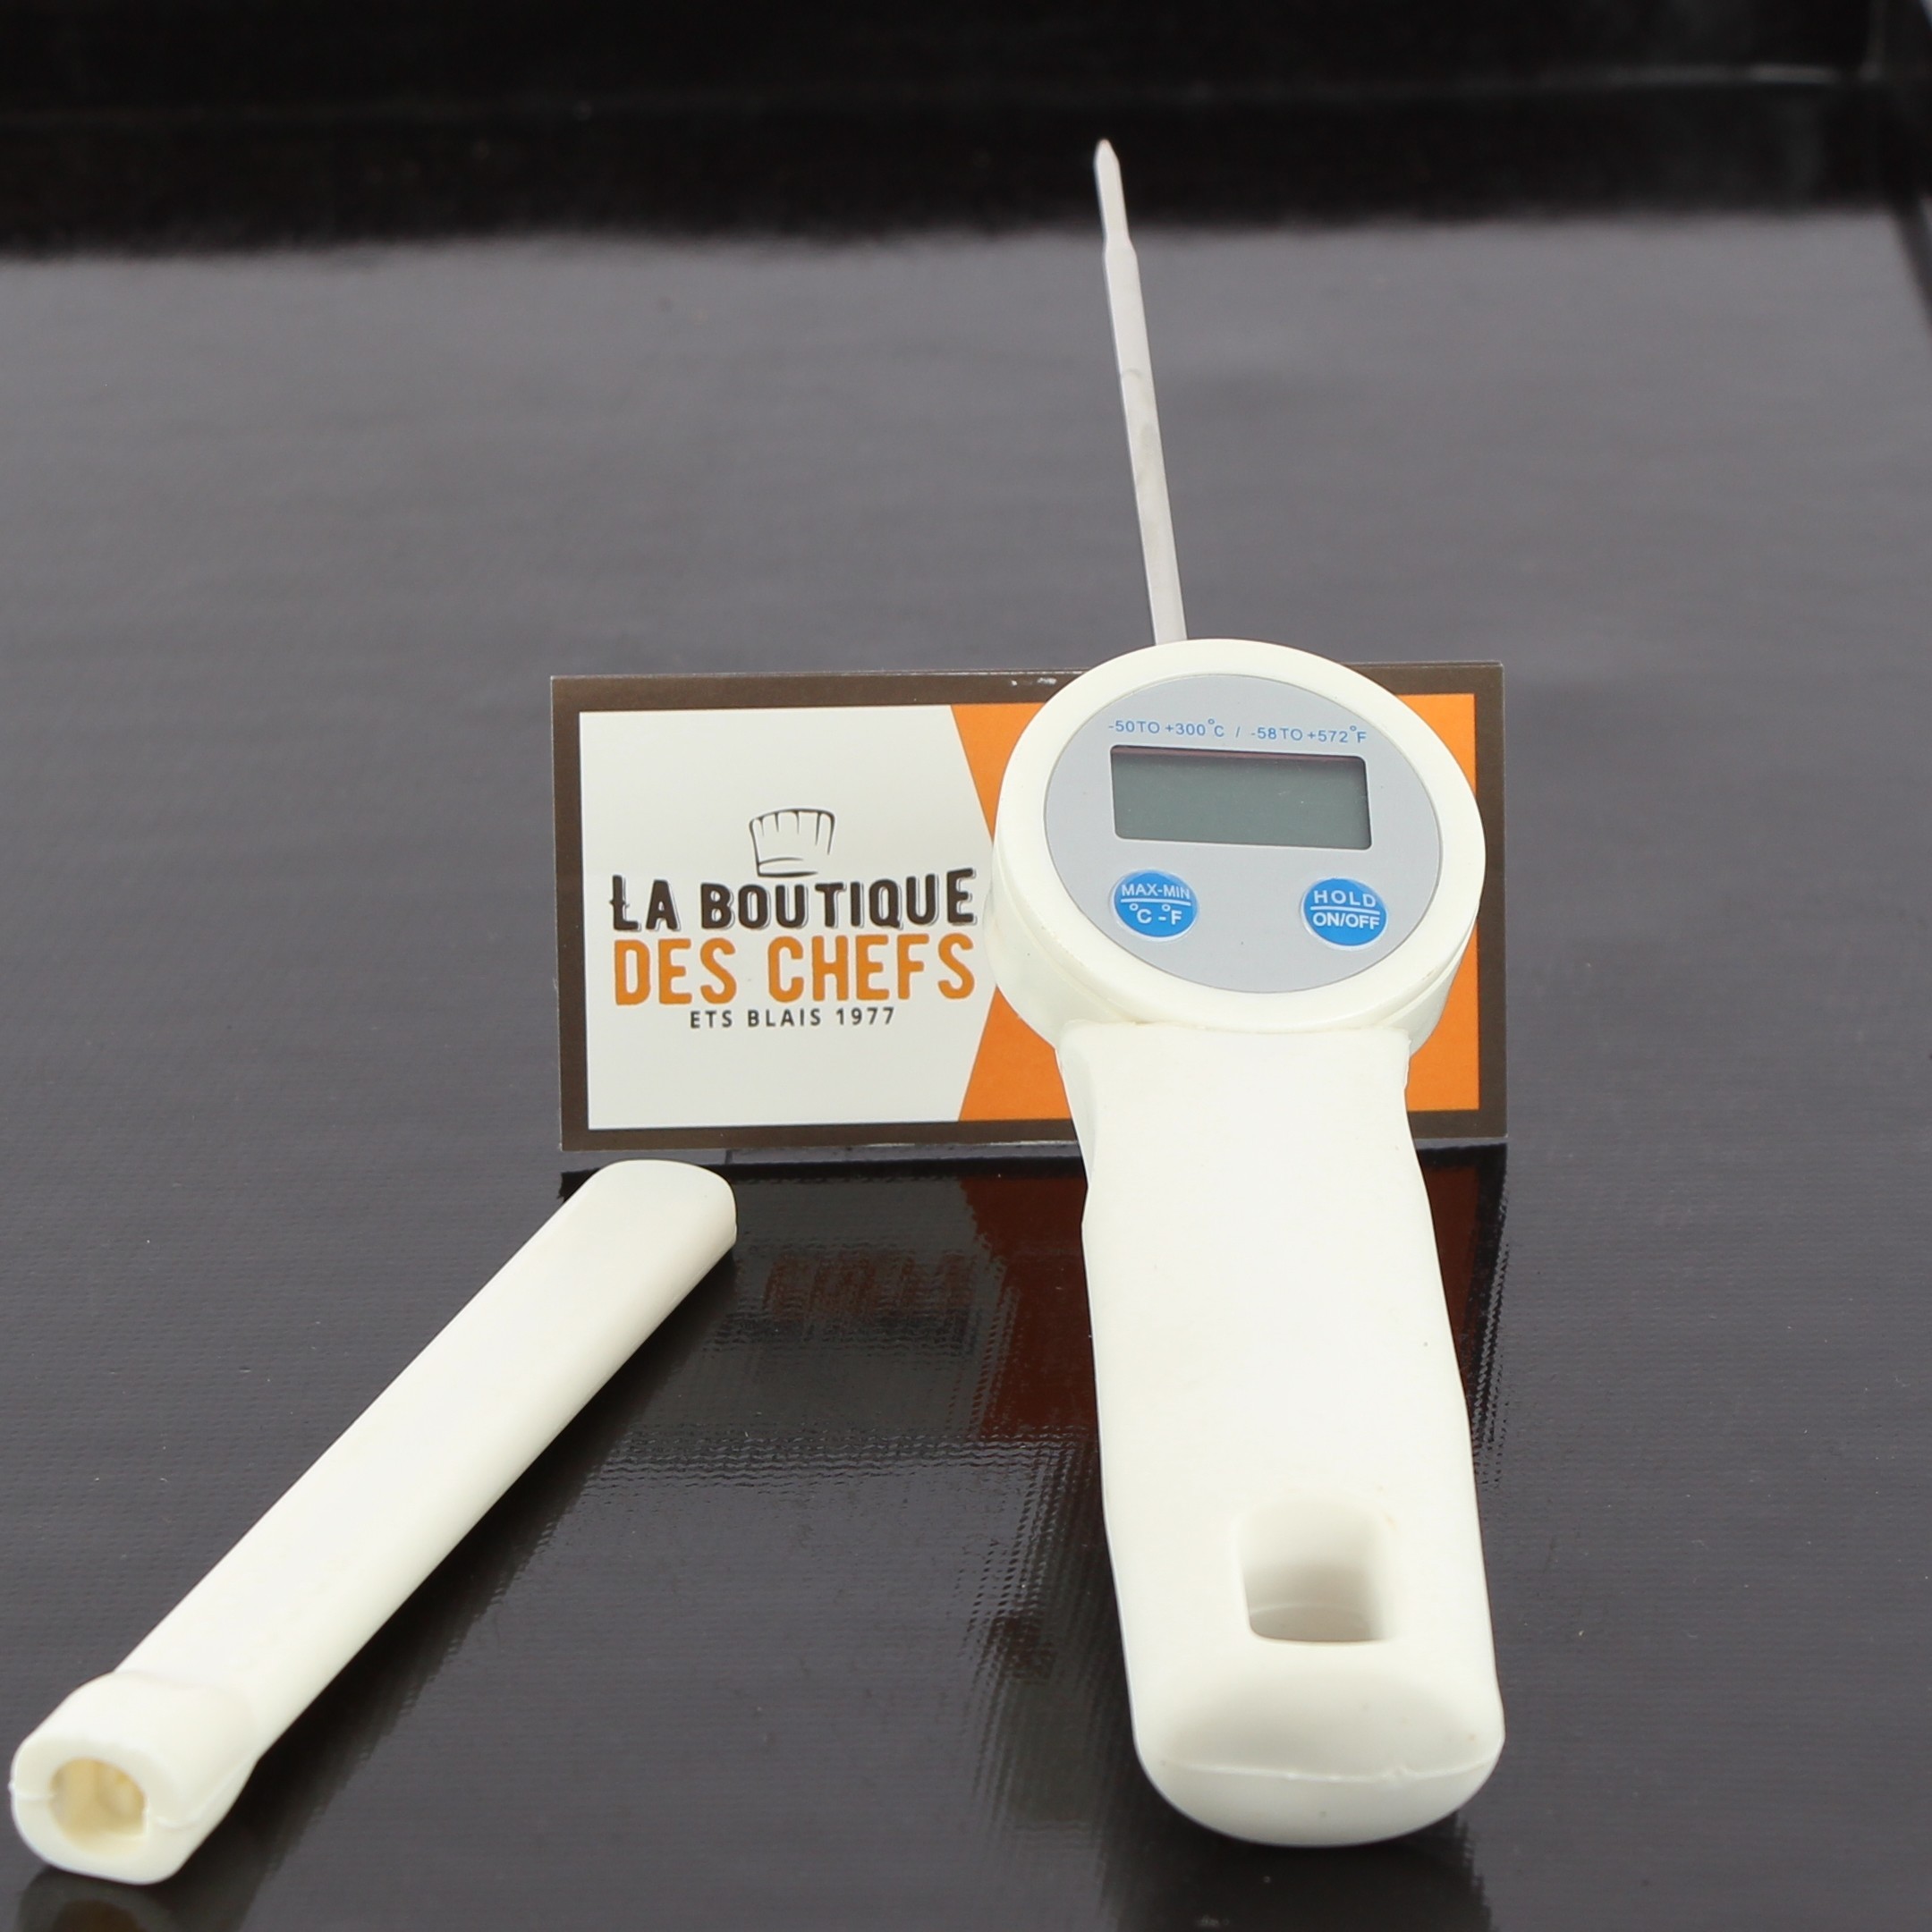 Thermomètre à viande sonde à cadran 0 à +120°C - Matfer-Bourgeat